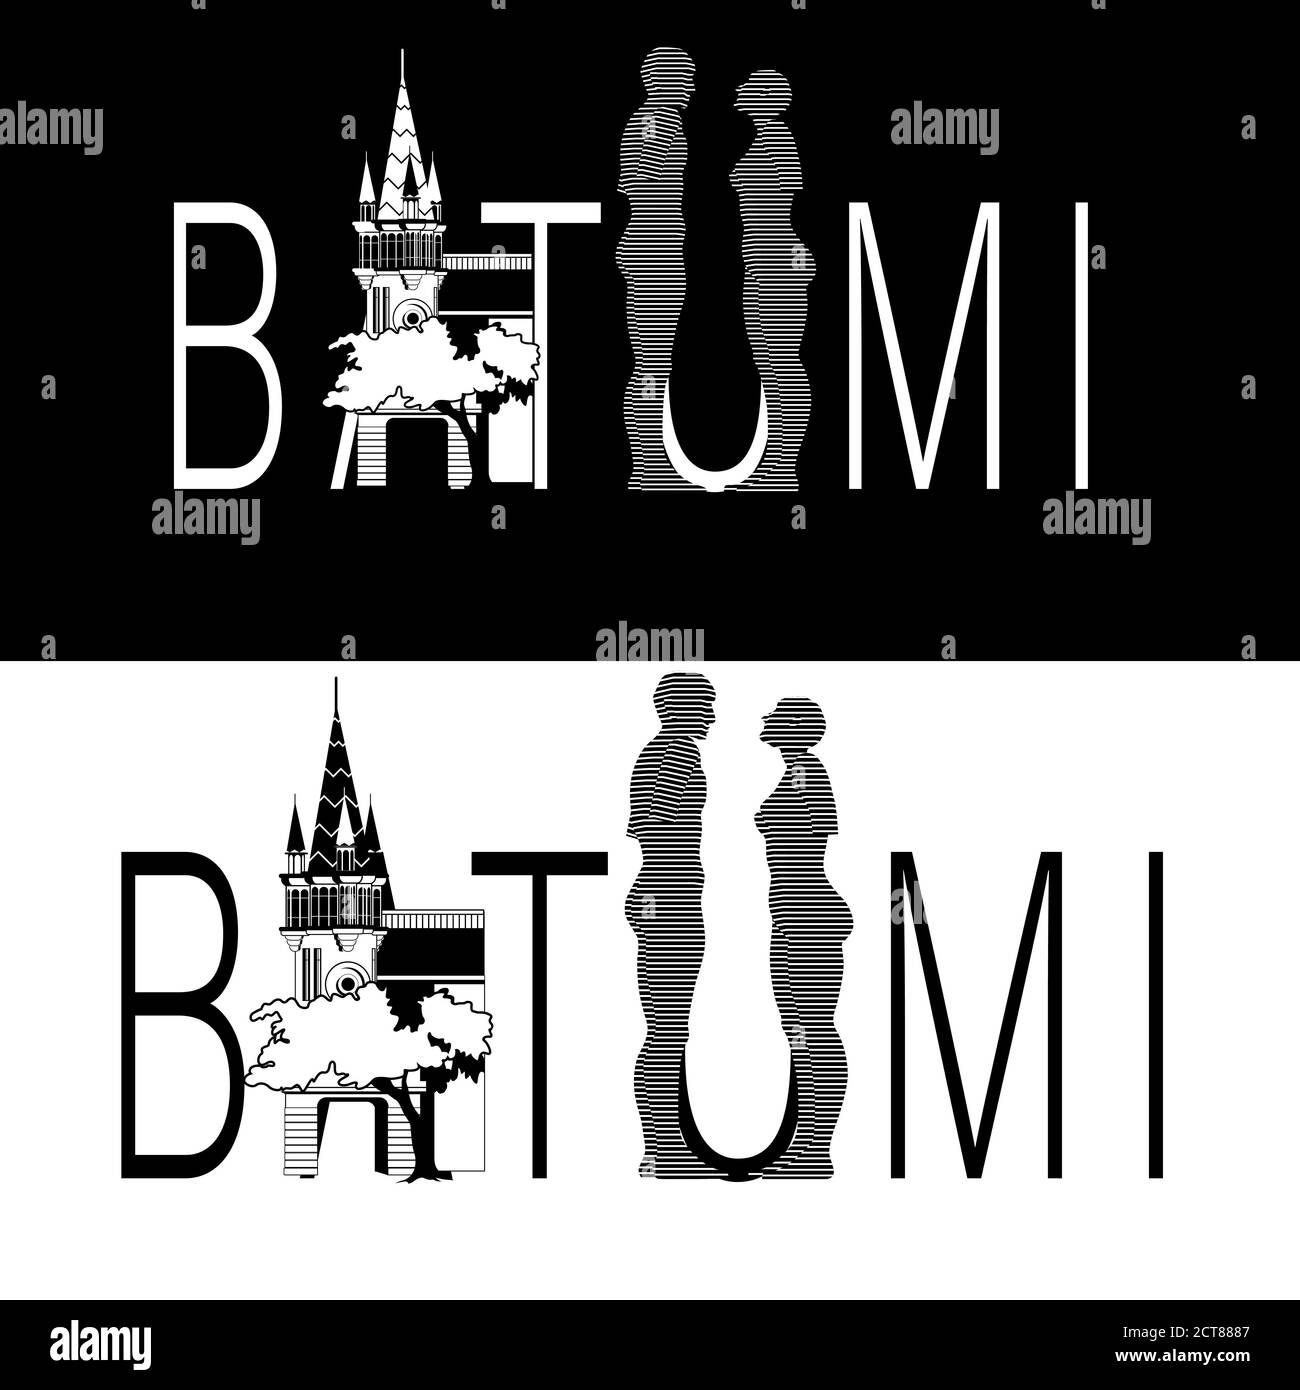 Drucken Sie mit Batumi Text und ikonischen Gebäude und Statue Symbol der Liebe. Postkarte, Banner, Logo der Stadt in Georgien. Vektorgrafik Stock Vektor